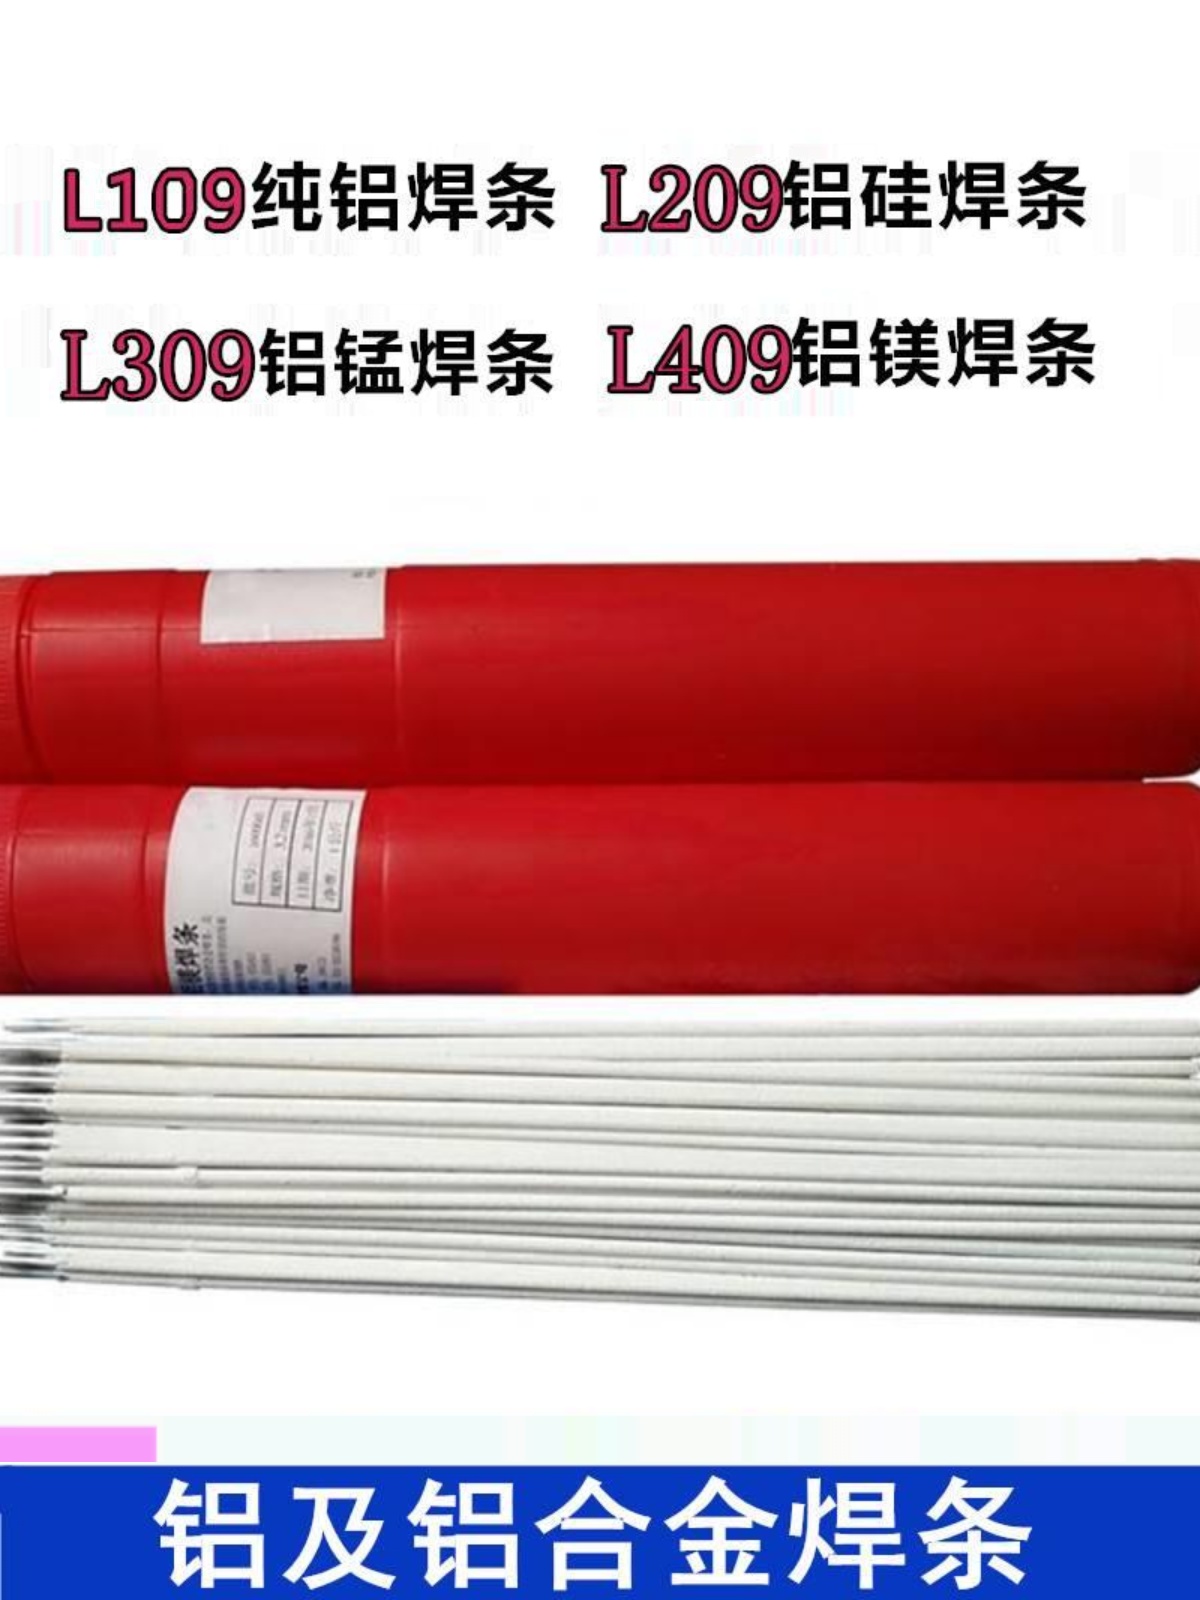 铝焊条L109纯铝焊条L209铝硅焊条L309 L409铝合金电焊条3.2 - 图1